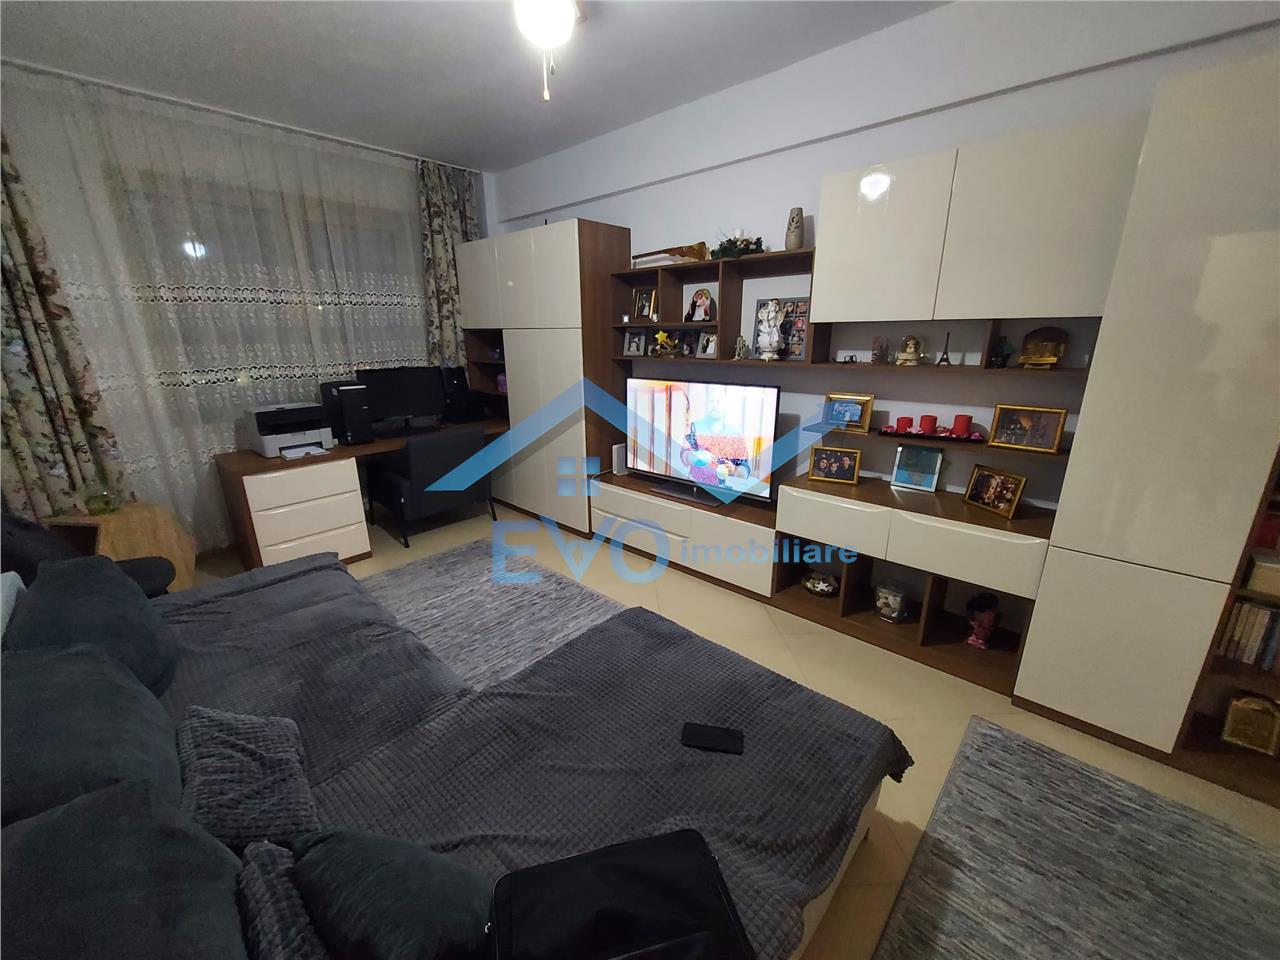 Apartament 3 camere, parter, 2015, Lunca Cetatuii.